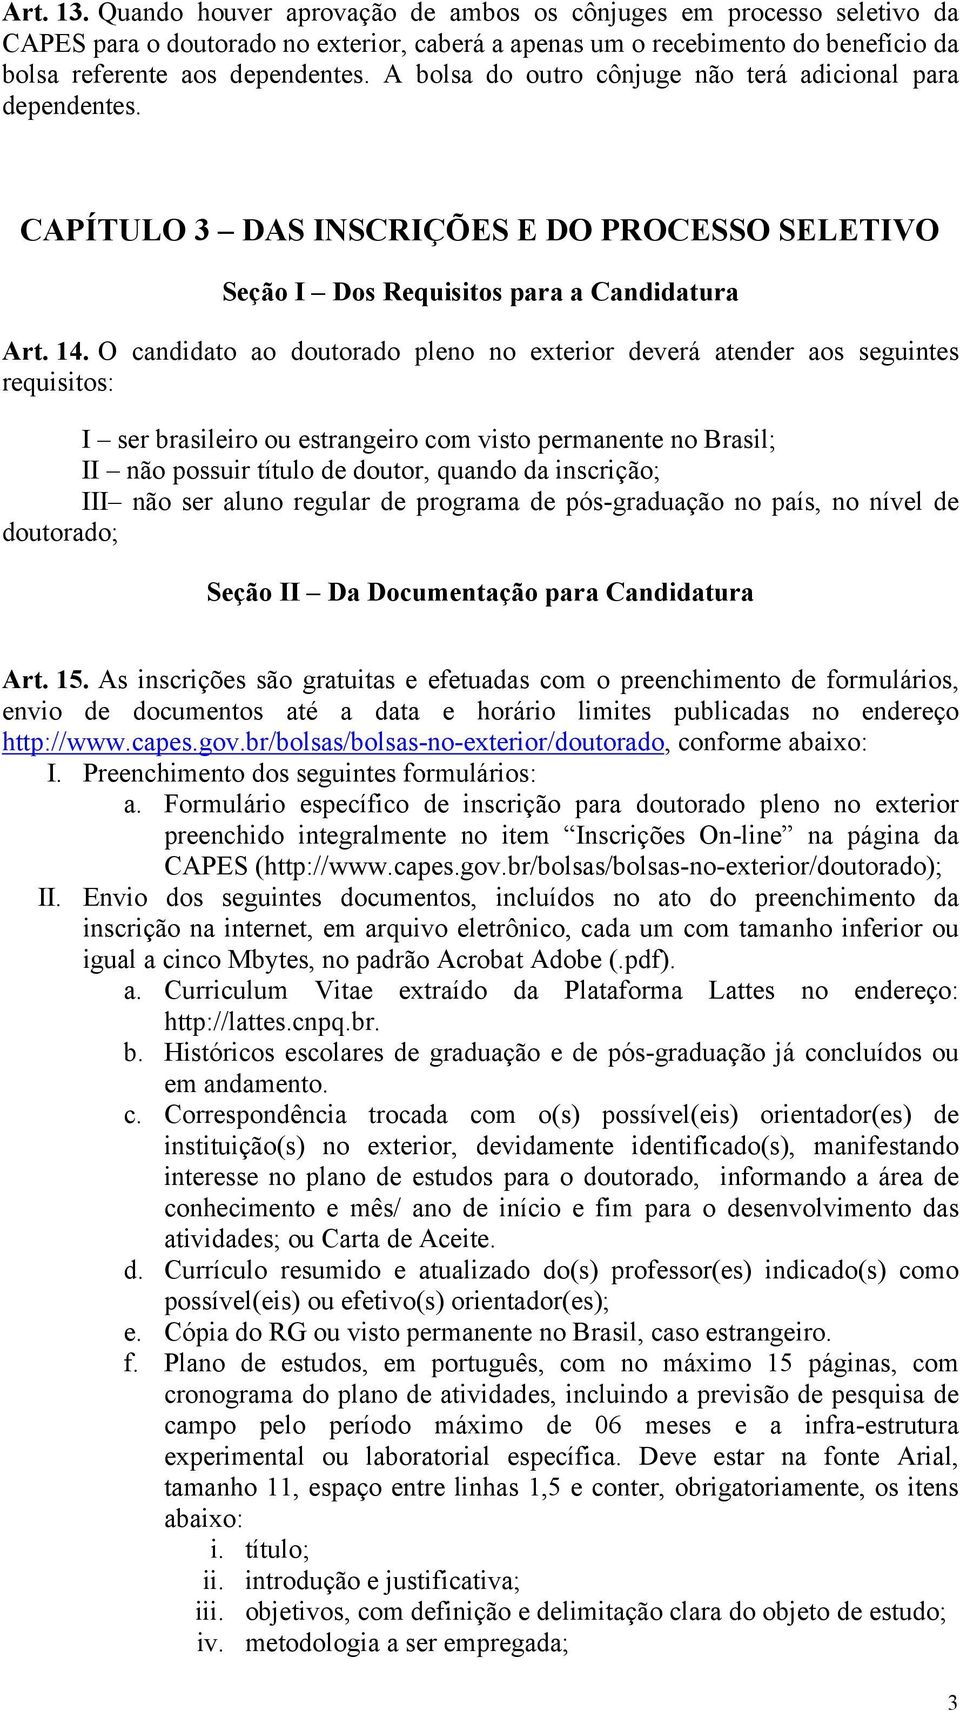 O candidato ao doutorado pleno no exterior deverá atender aos seguintes requisitos: I ser brasileiro ou estrangeiro com visto permanente no Brasil; II não possuir título de doutor, quando da